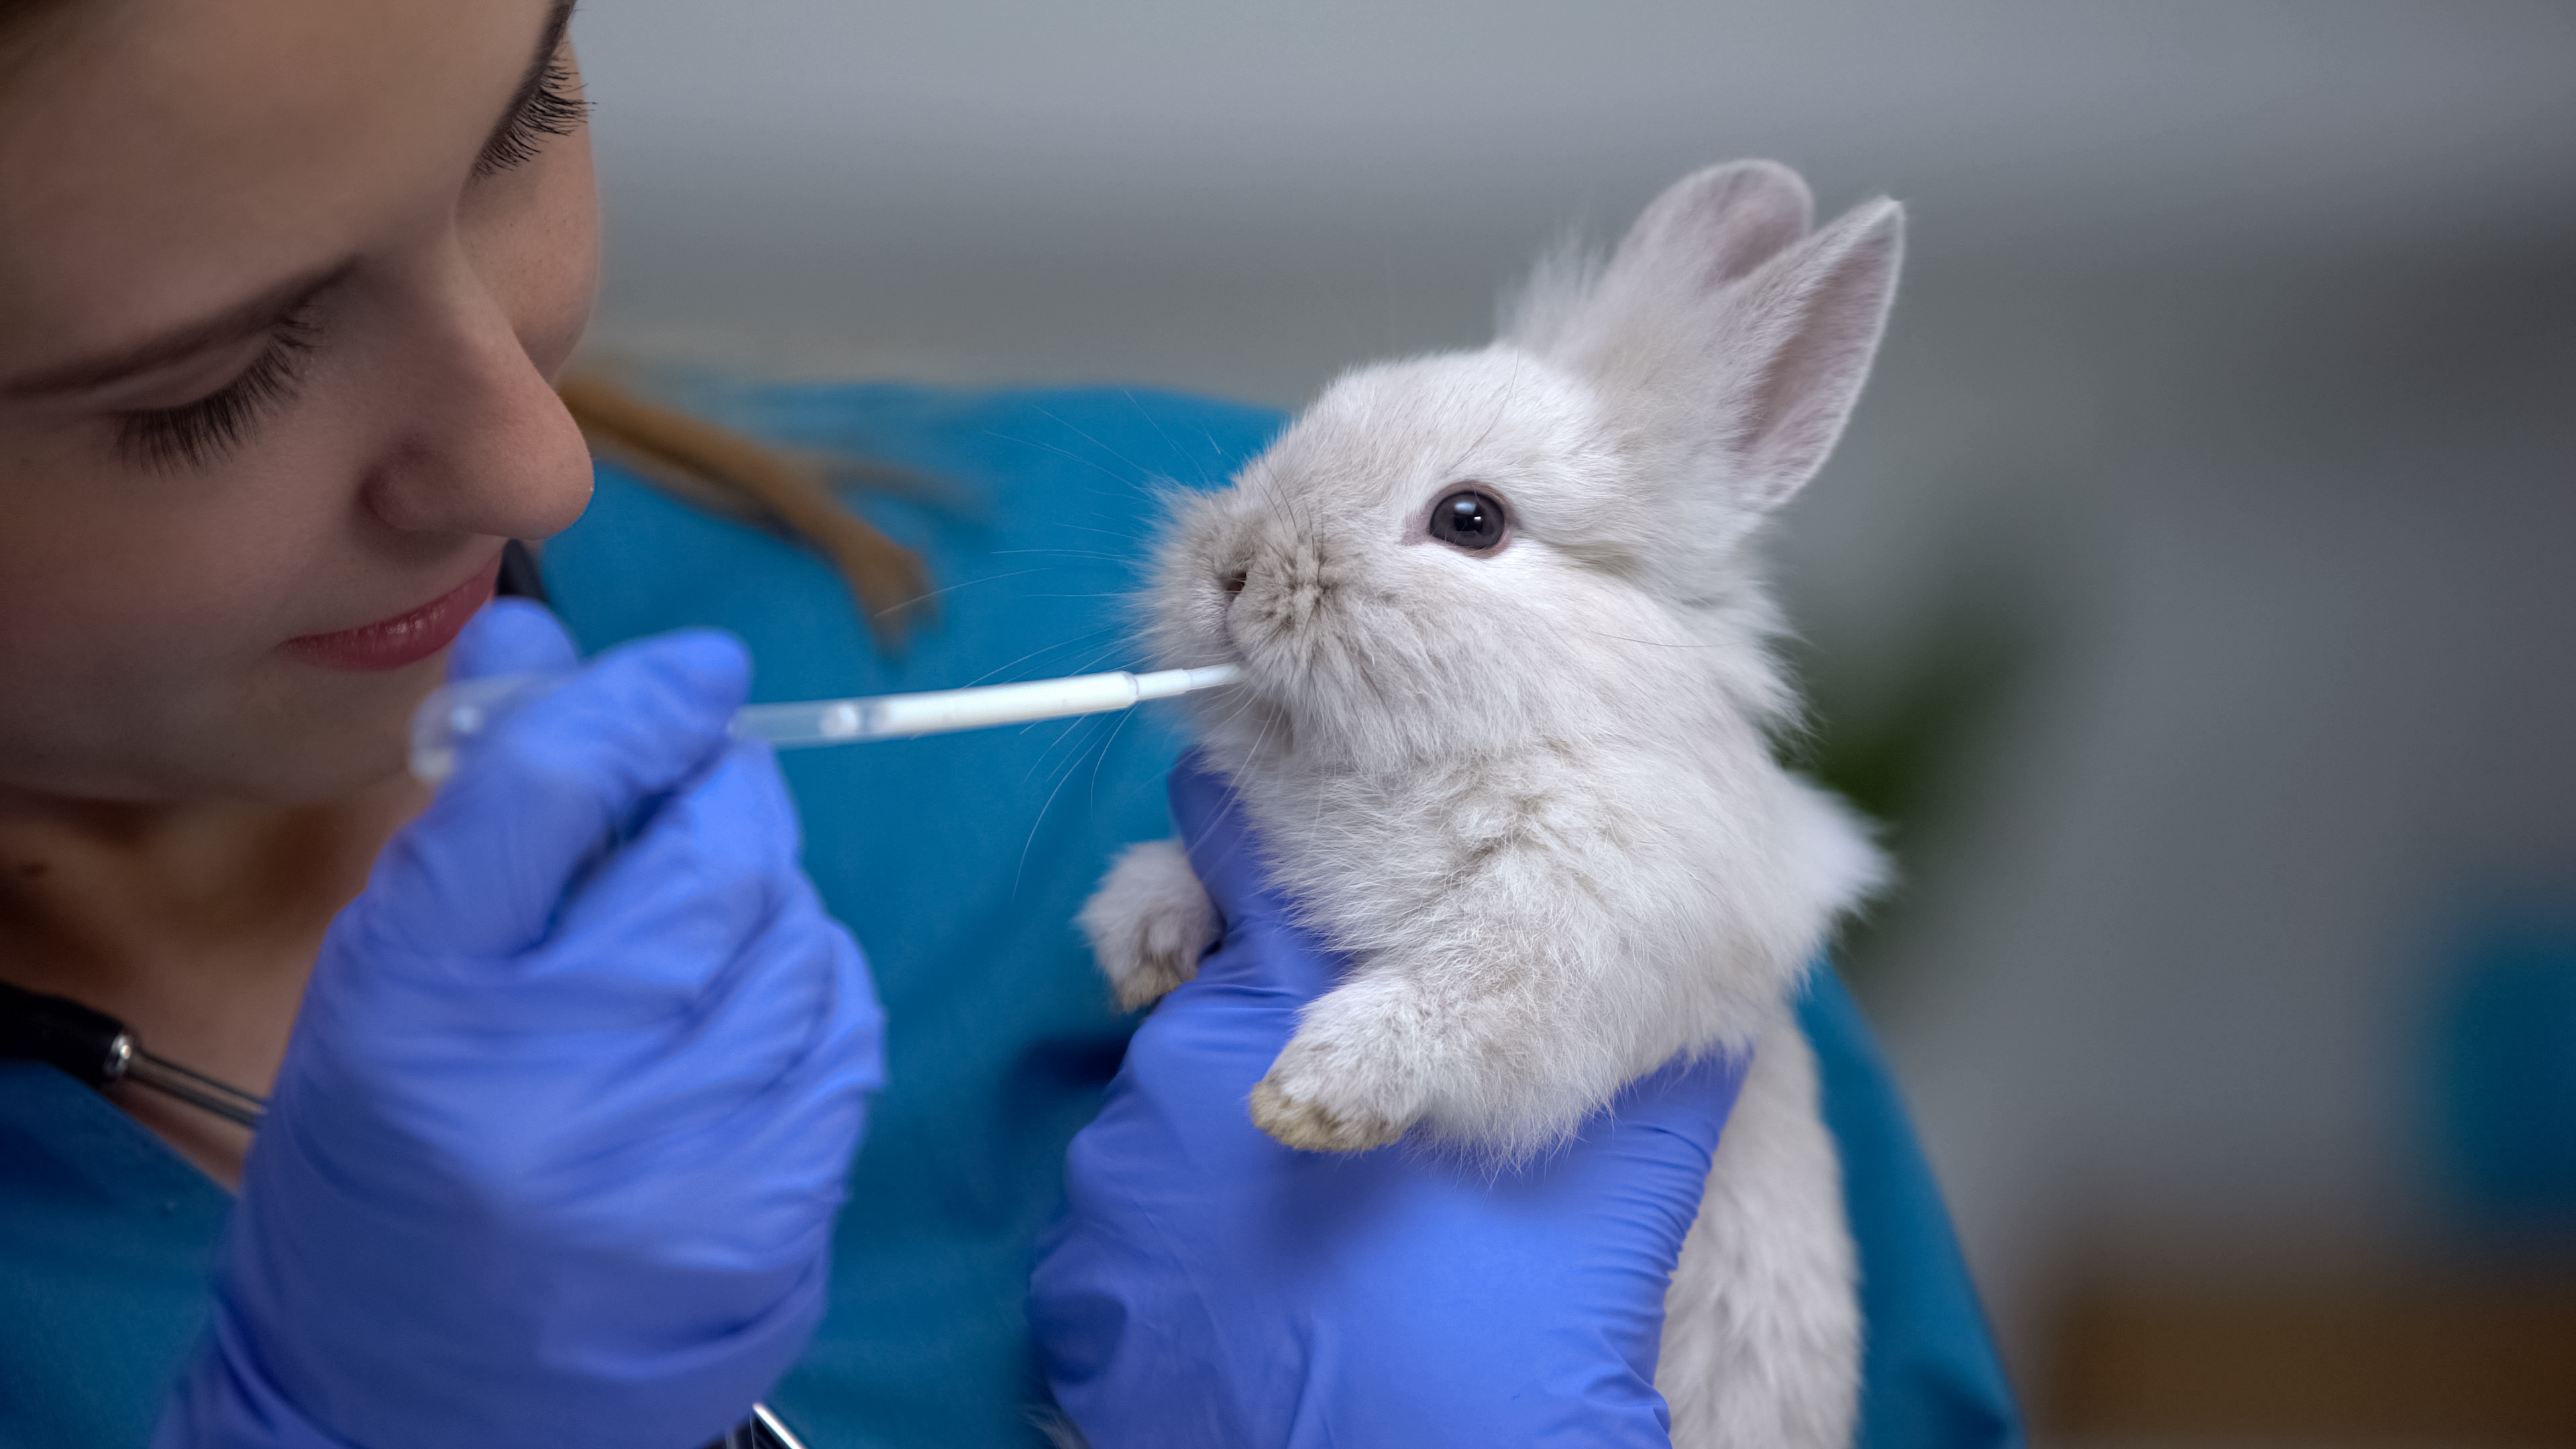 Syringe feeding rabbits